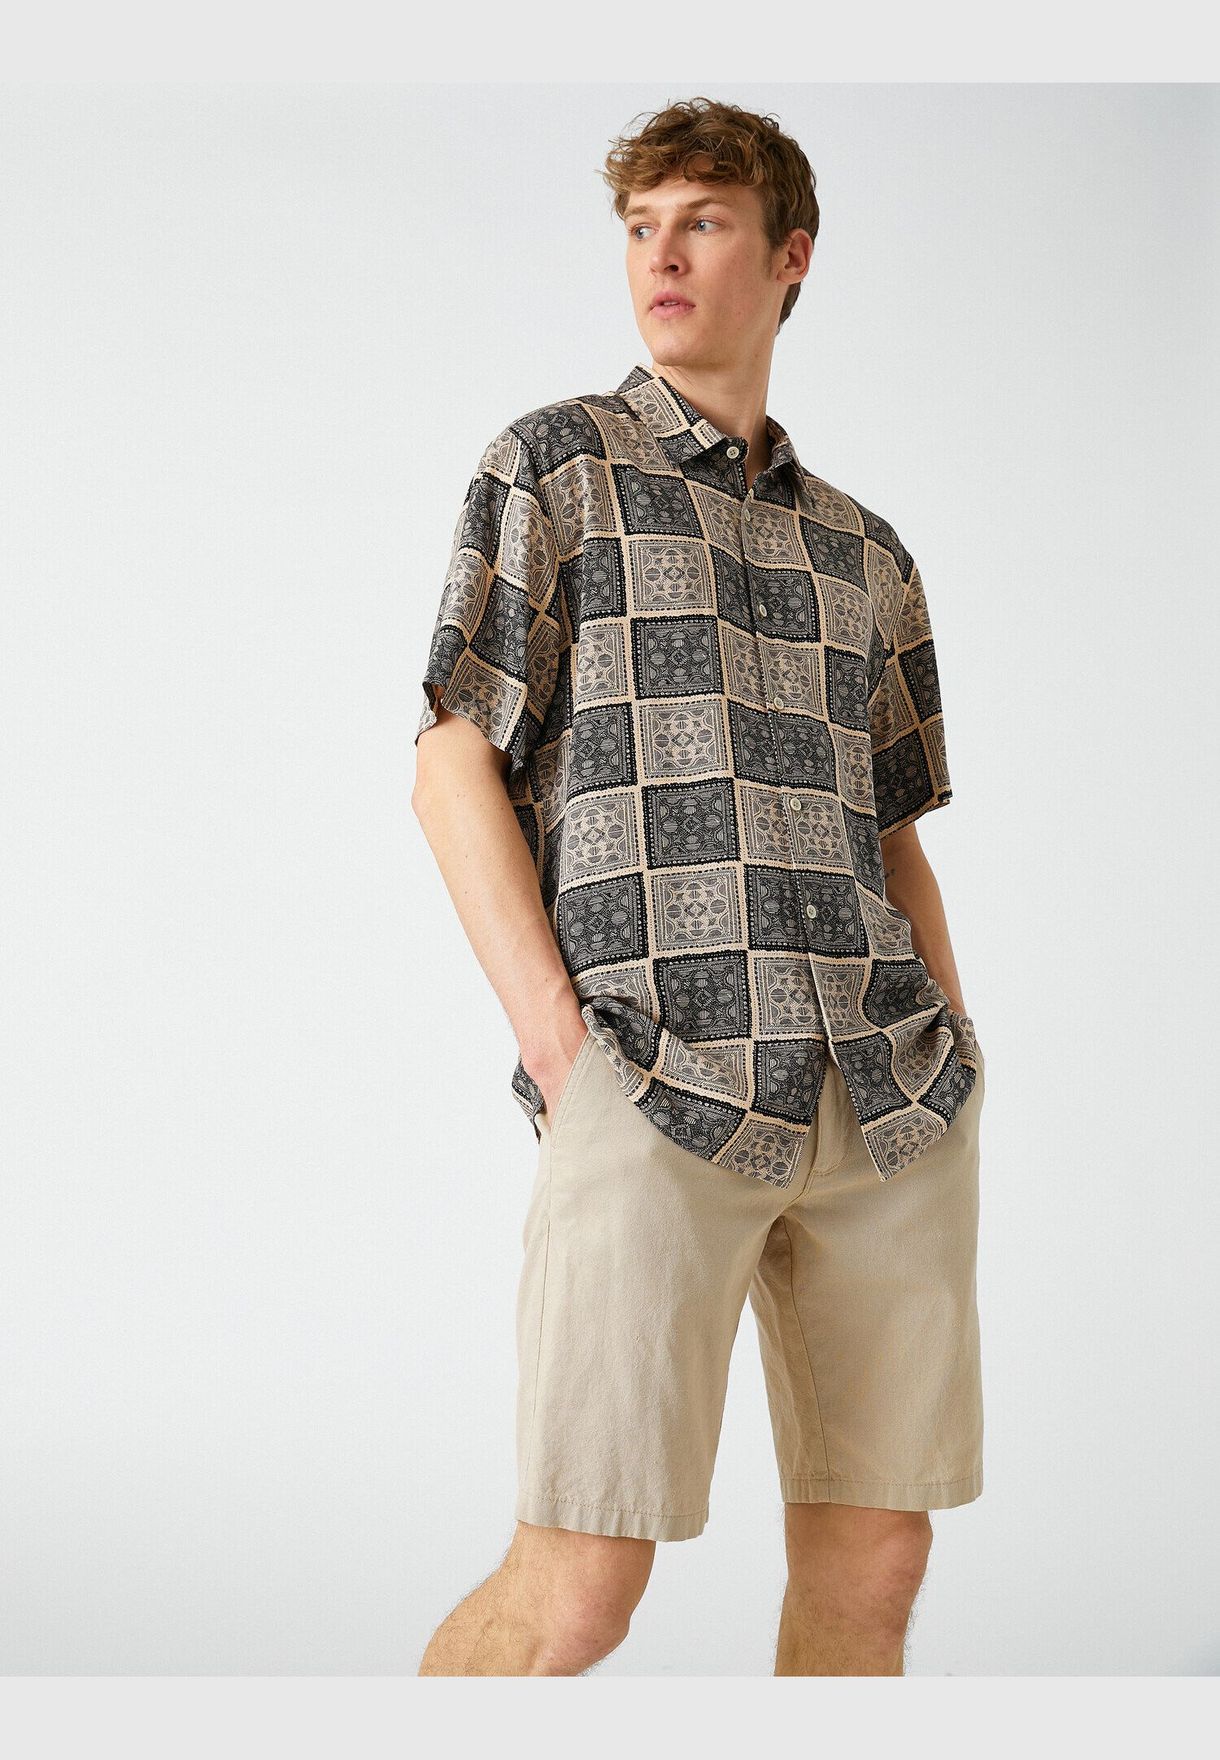 Ethnic Patterned Short Sleeve Shirt